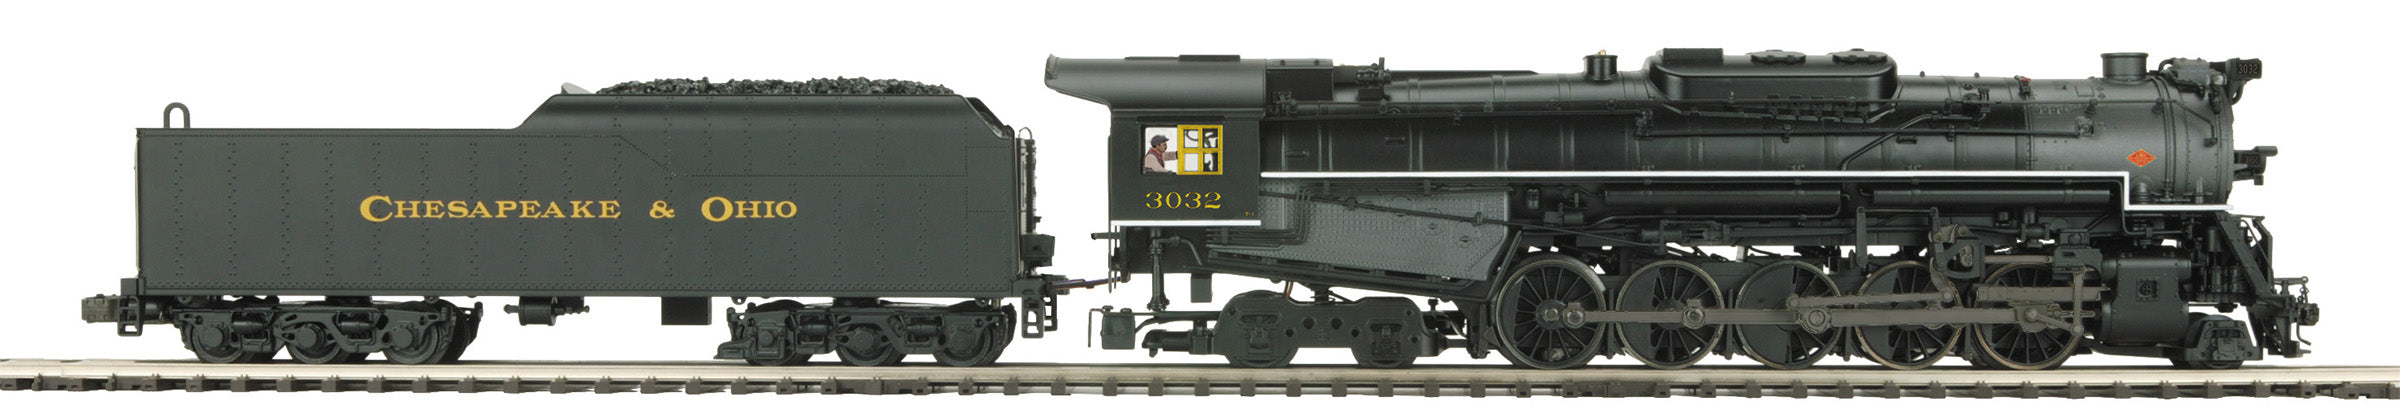 MTH 20-3850-1 - T1 2-10-4 Steam Engine "Chesapeake & Ohio" #3032 w/ PS3